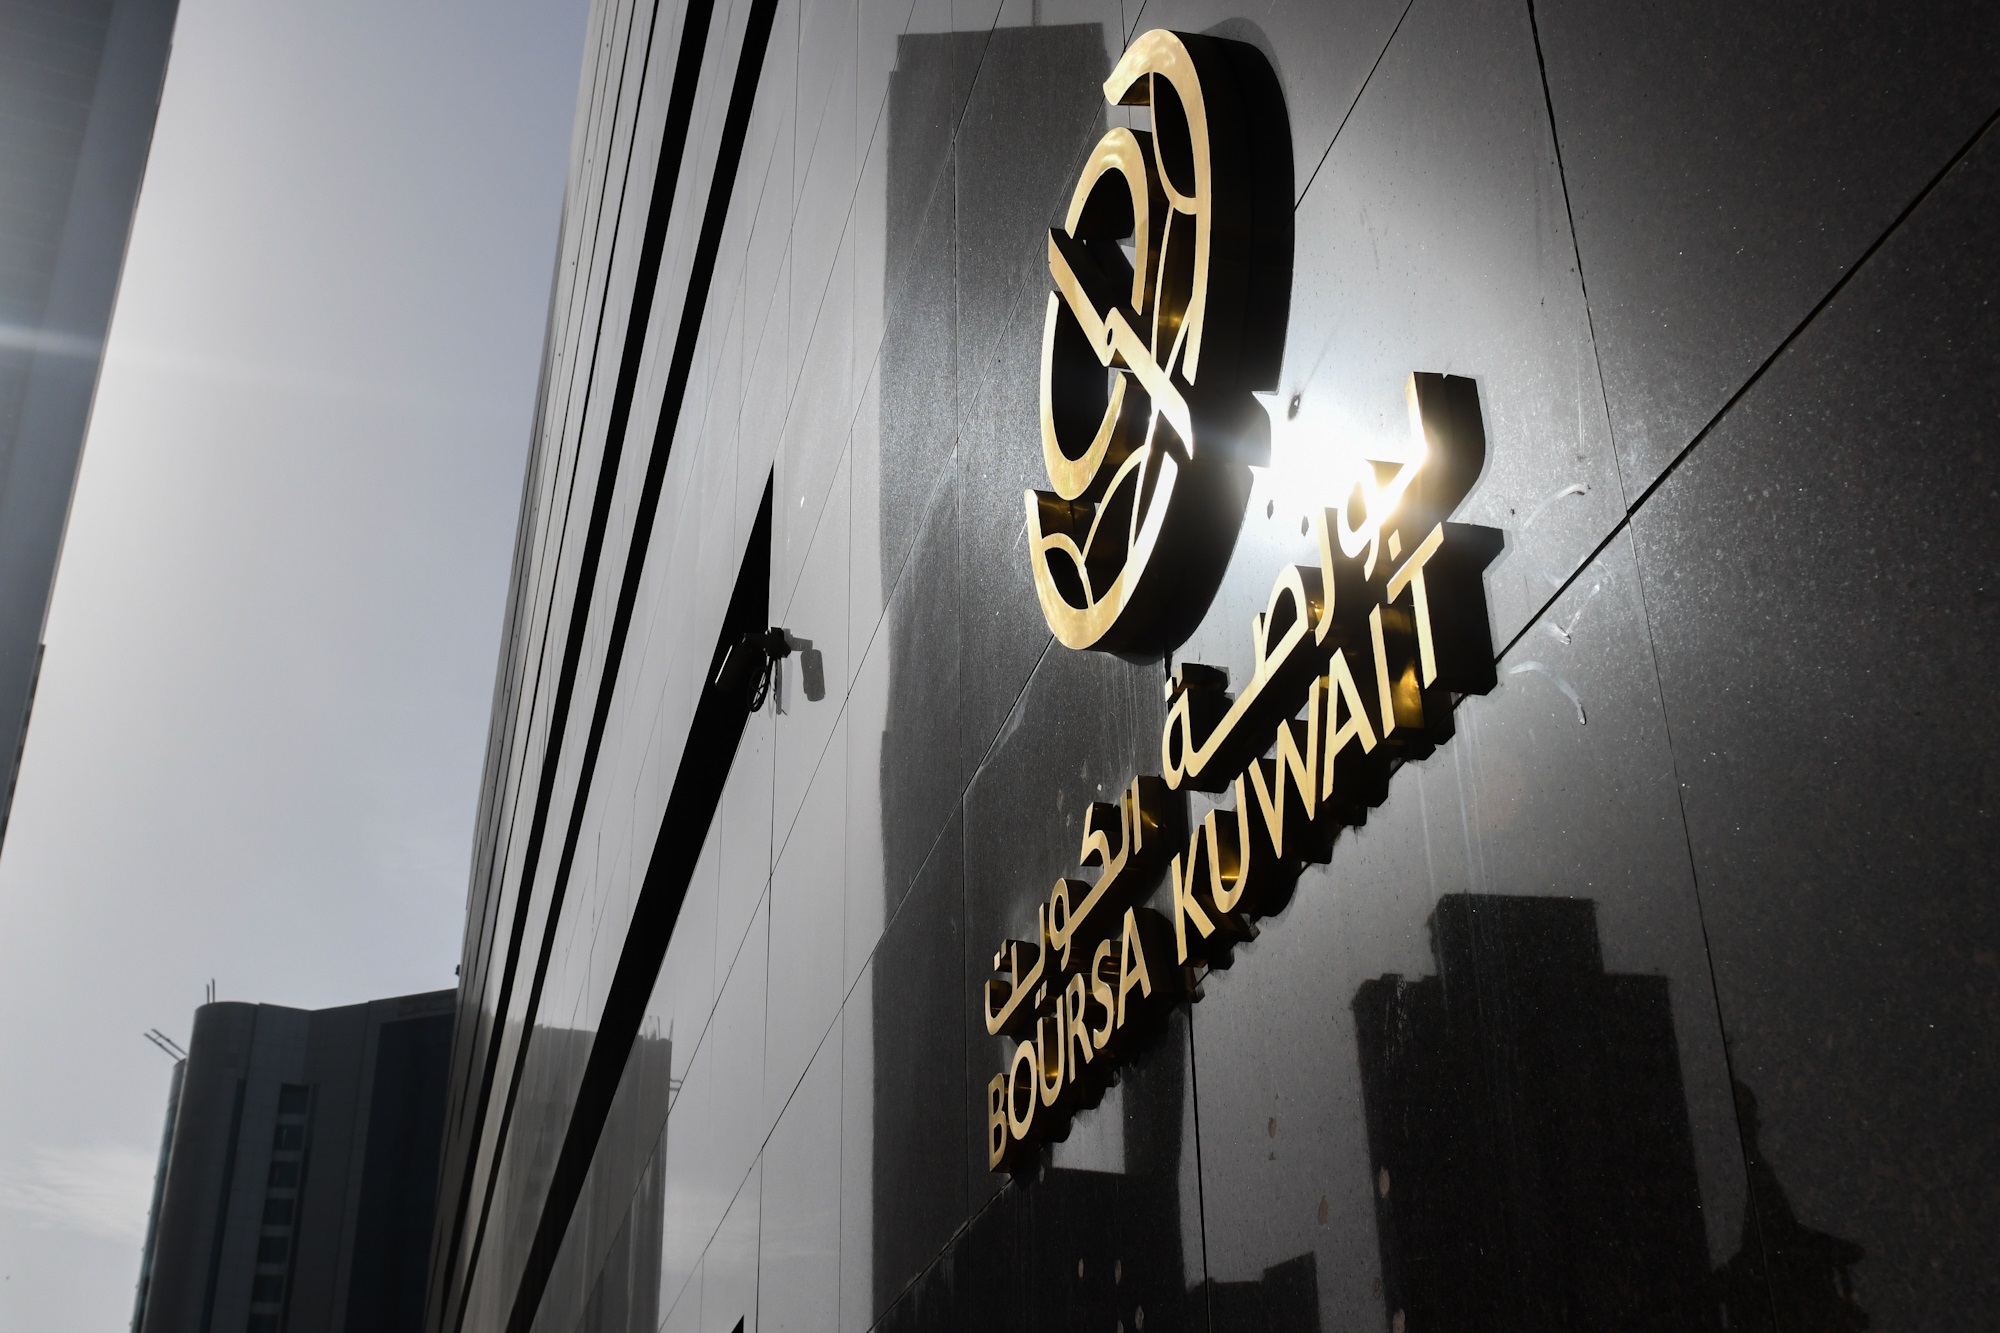 بورصة الكويت تغلق تعاملاتها على ارتفاع مؤشرها العام 19ر2 نقطة ليبلغ 46ر7228 بنسبة 03ر0 في المئة                                                                                                                                                           